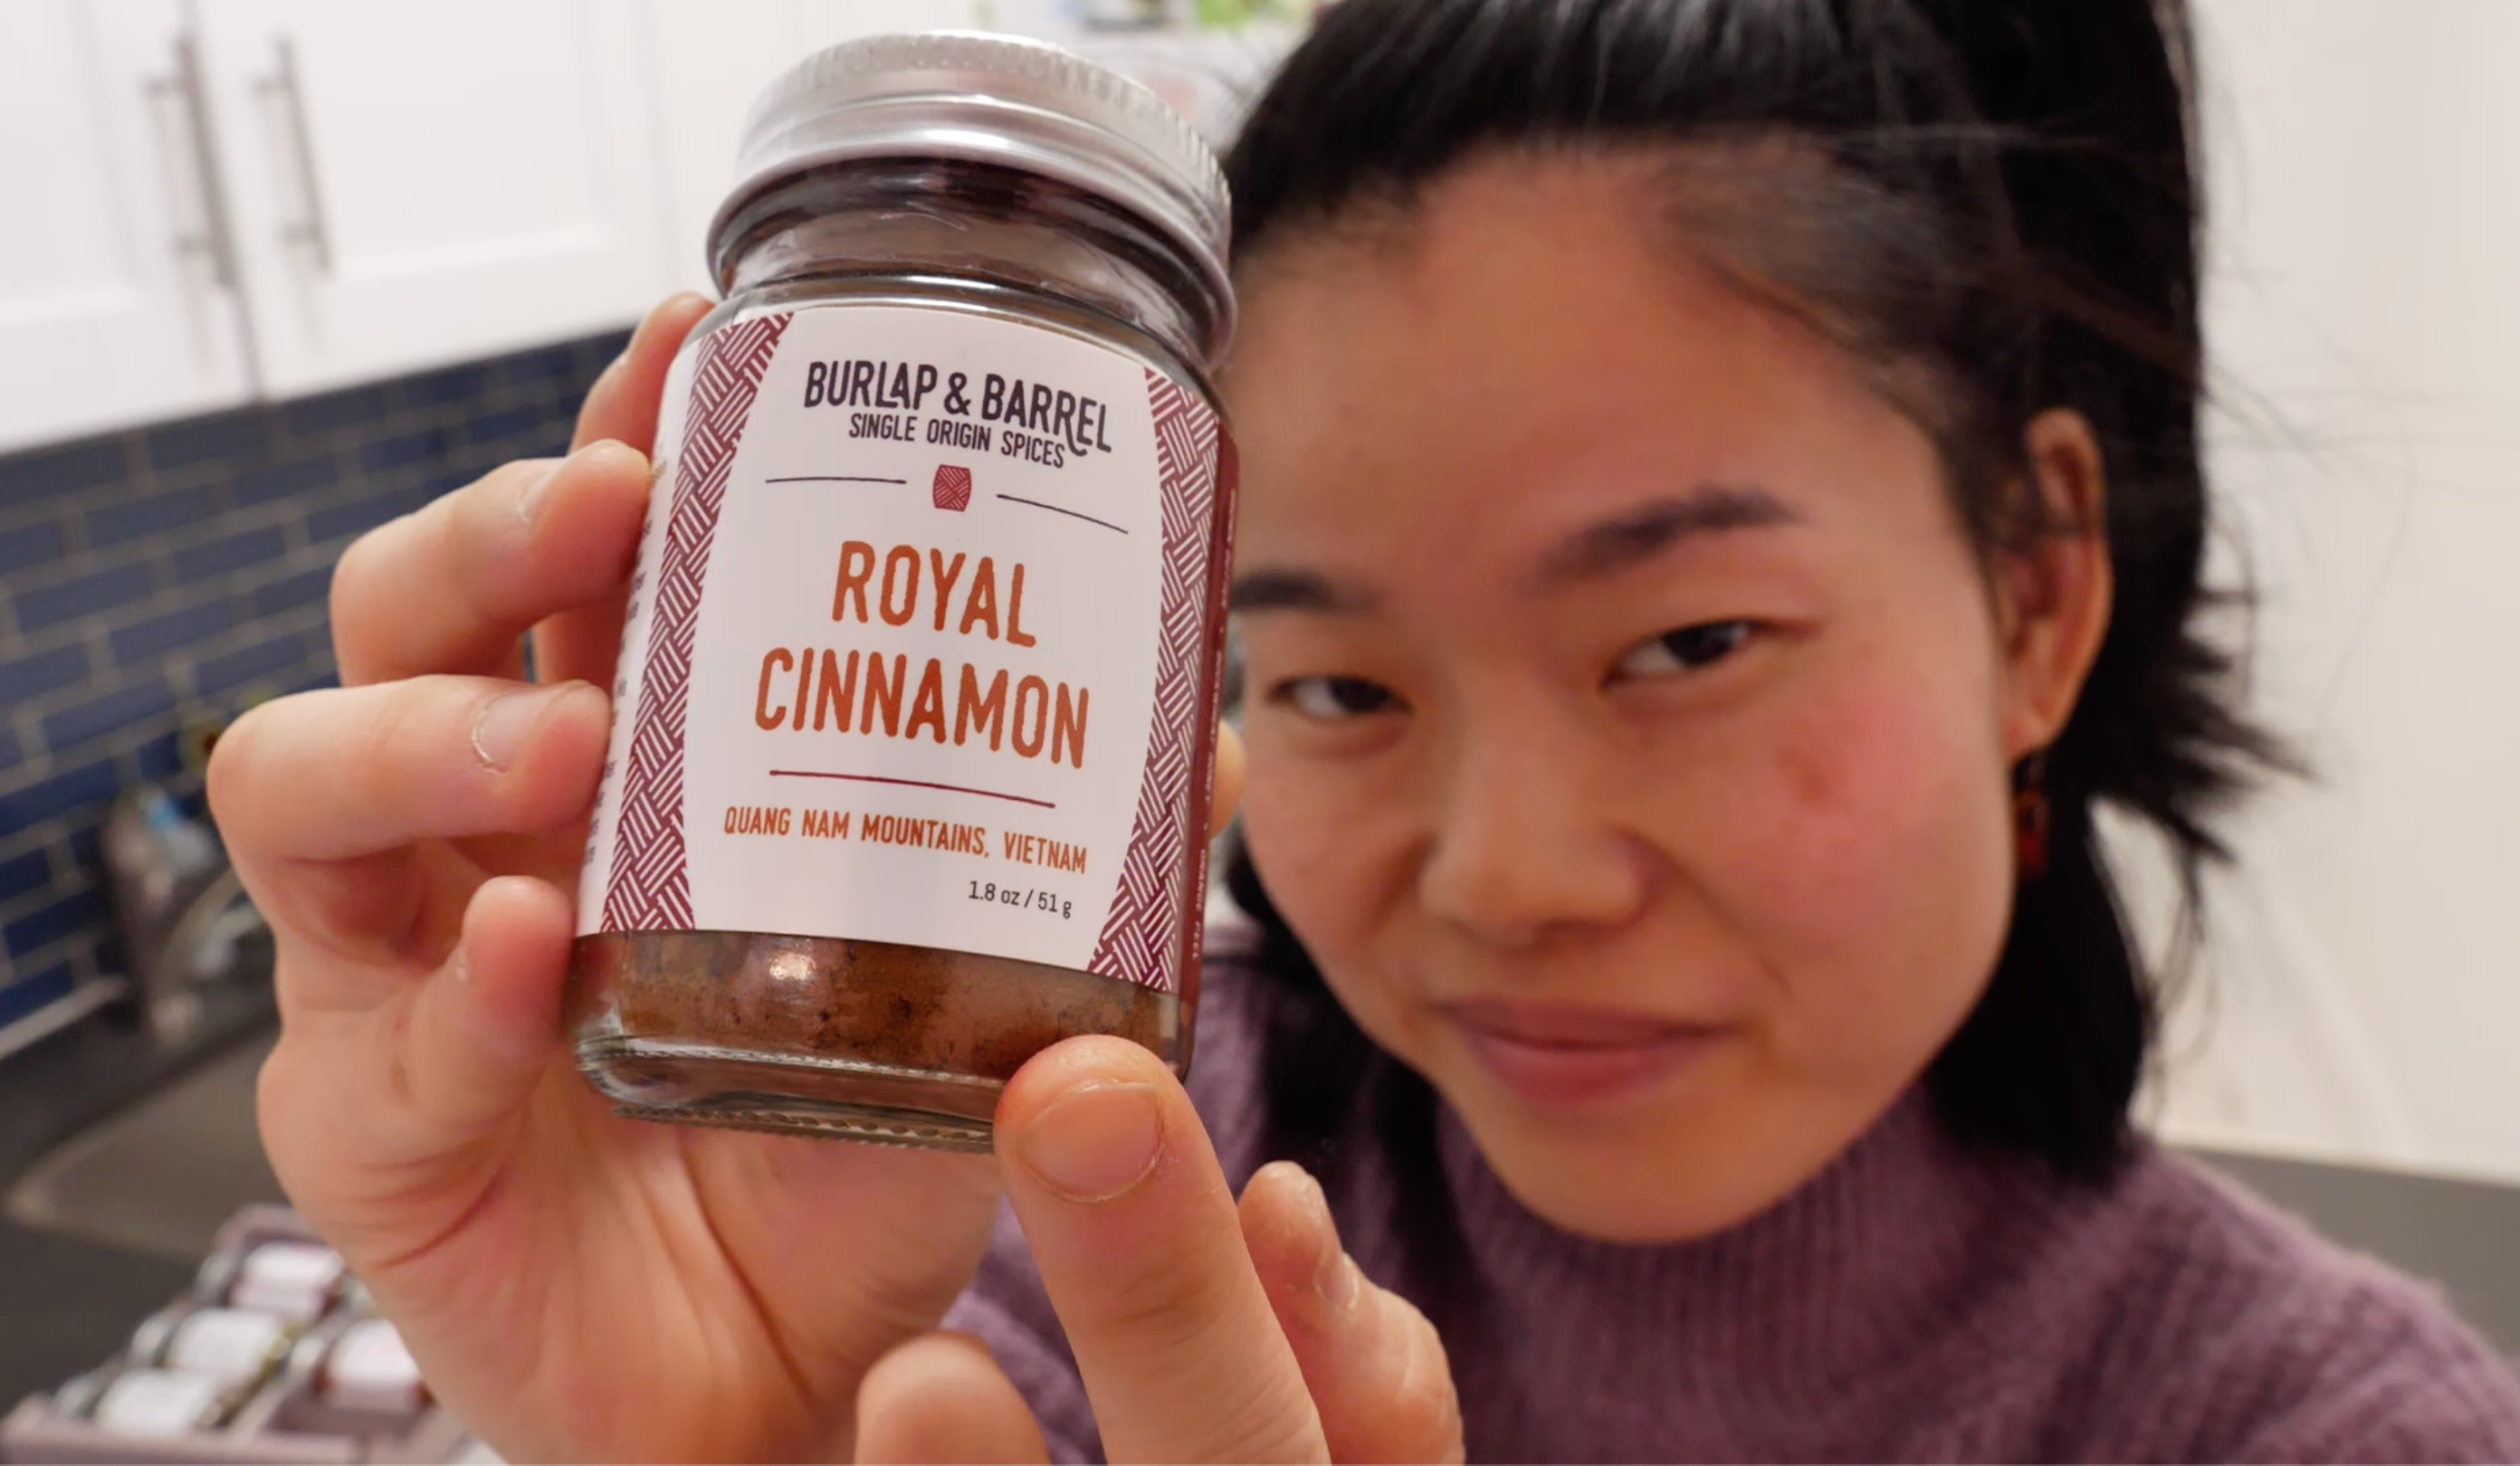 Royal Cinnamon